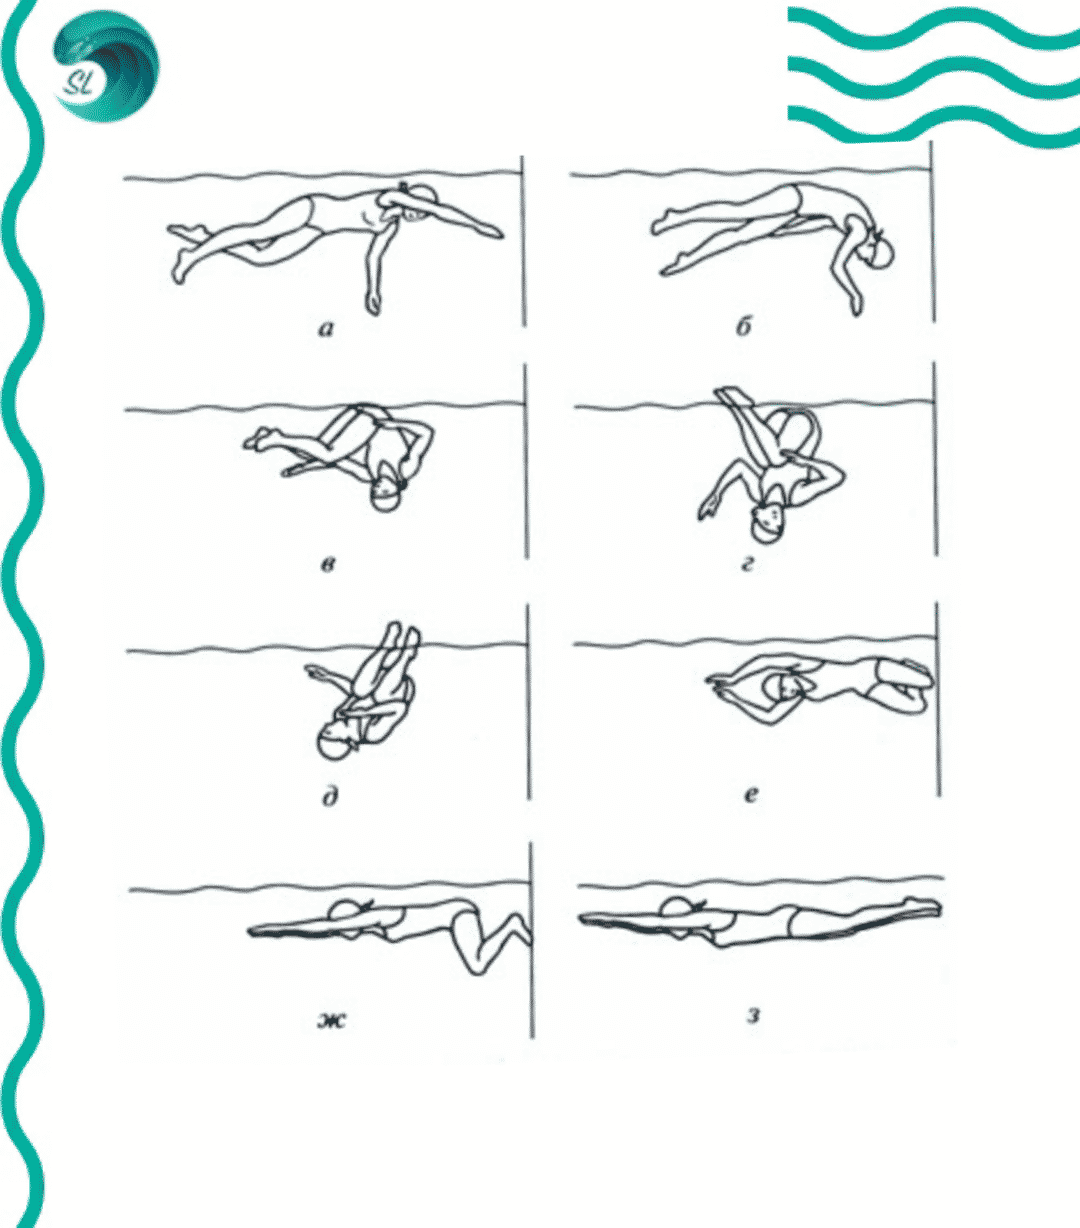 Плавание кролем пошагово. Схема плавания брассом. Техника плавания кролем для начинающих в картинках пошагово. Правильная техника плавания кролем. Техника разворота в плавании.